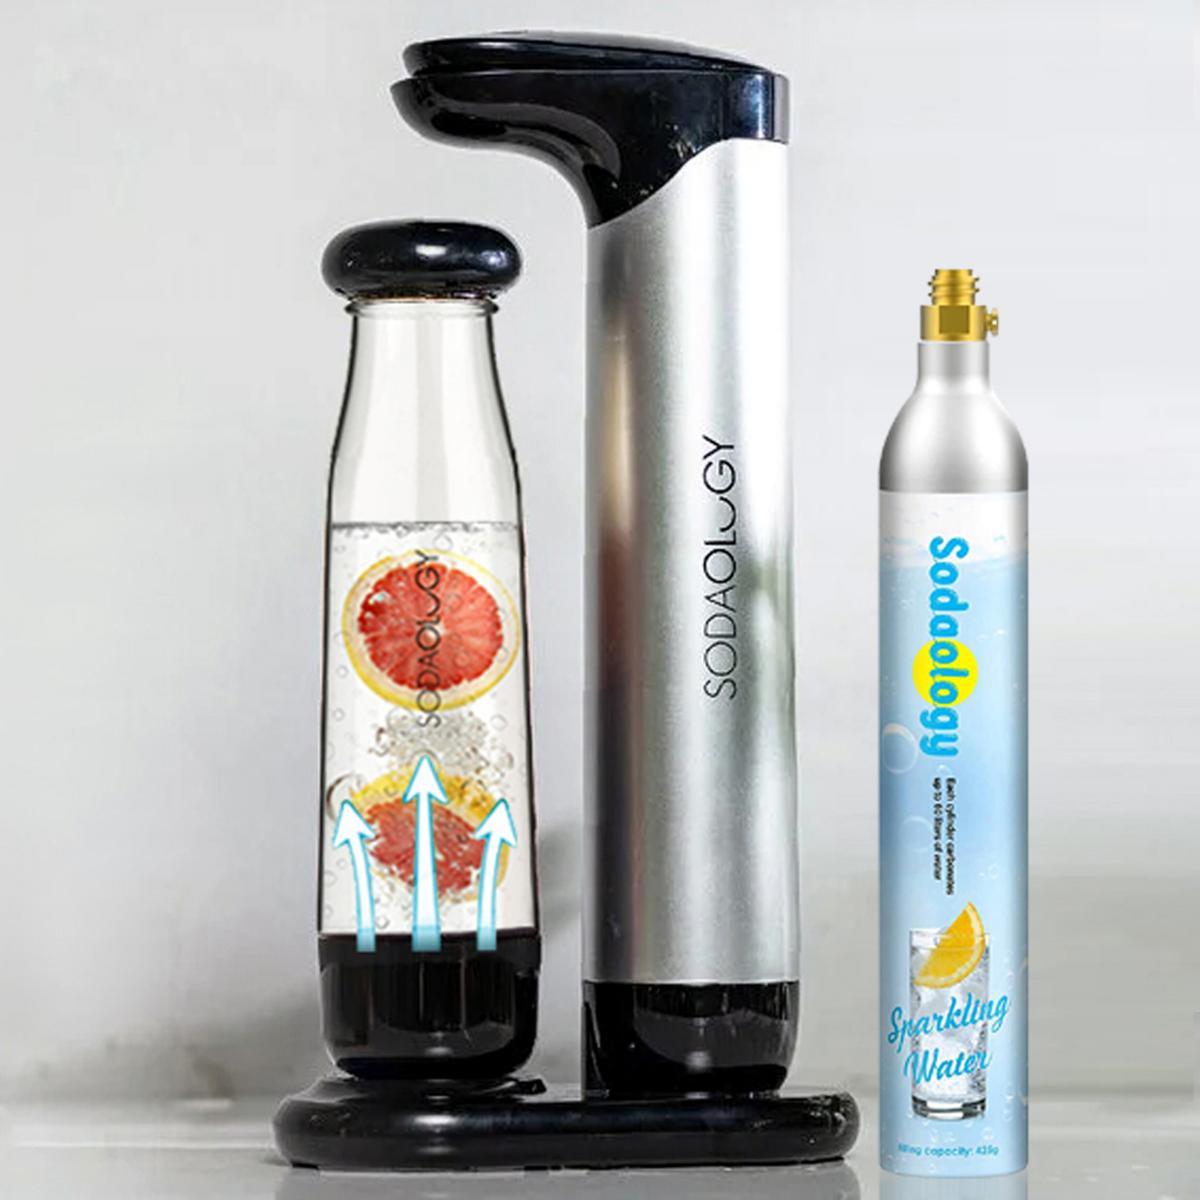 專業梳打水機套裝 (附送1支425g氣瓶, 可打60公升飲料) | 氣泡水機•梳打水機 Soda Fun